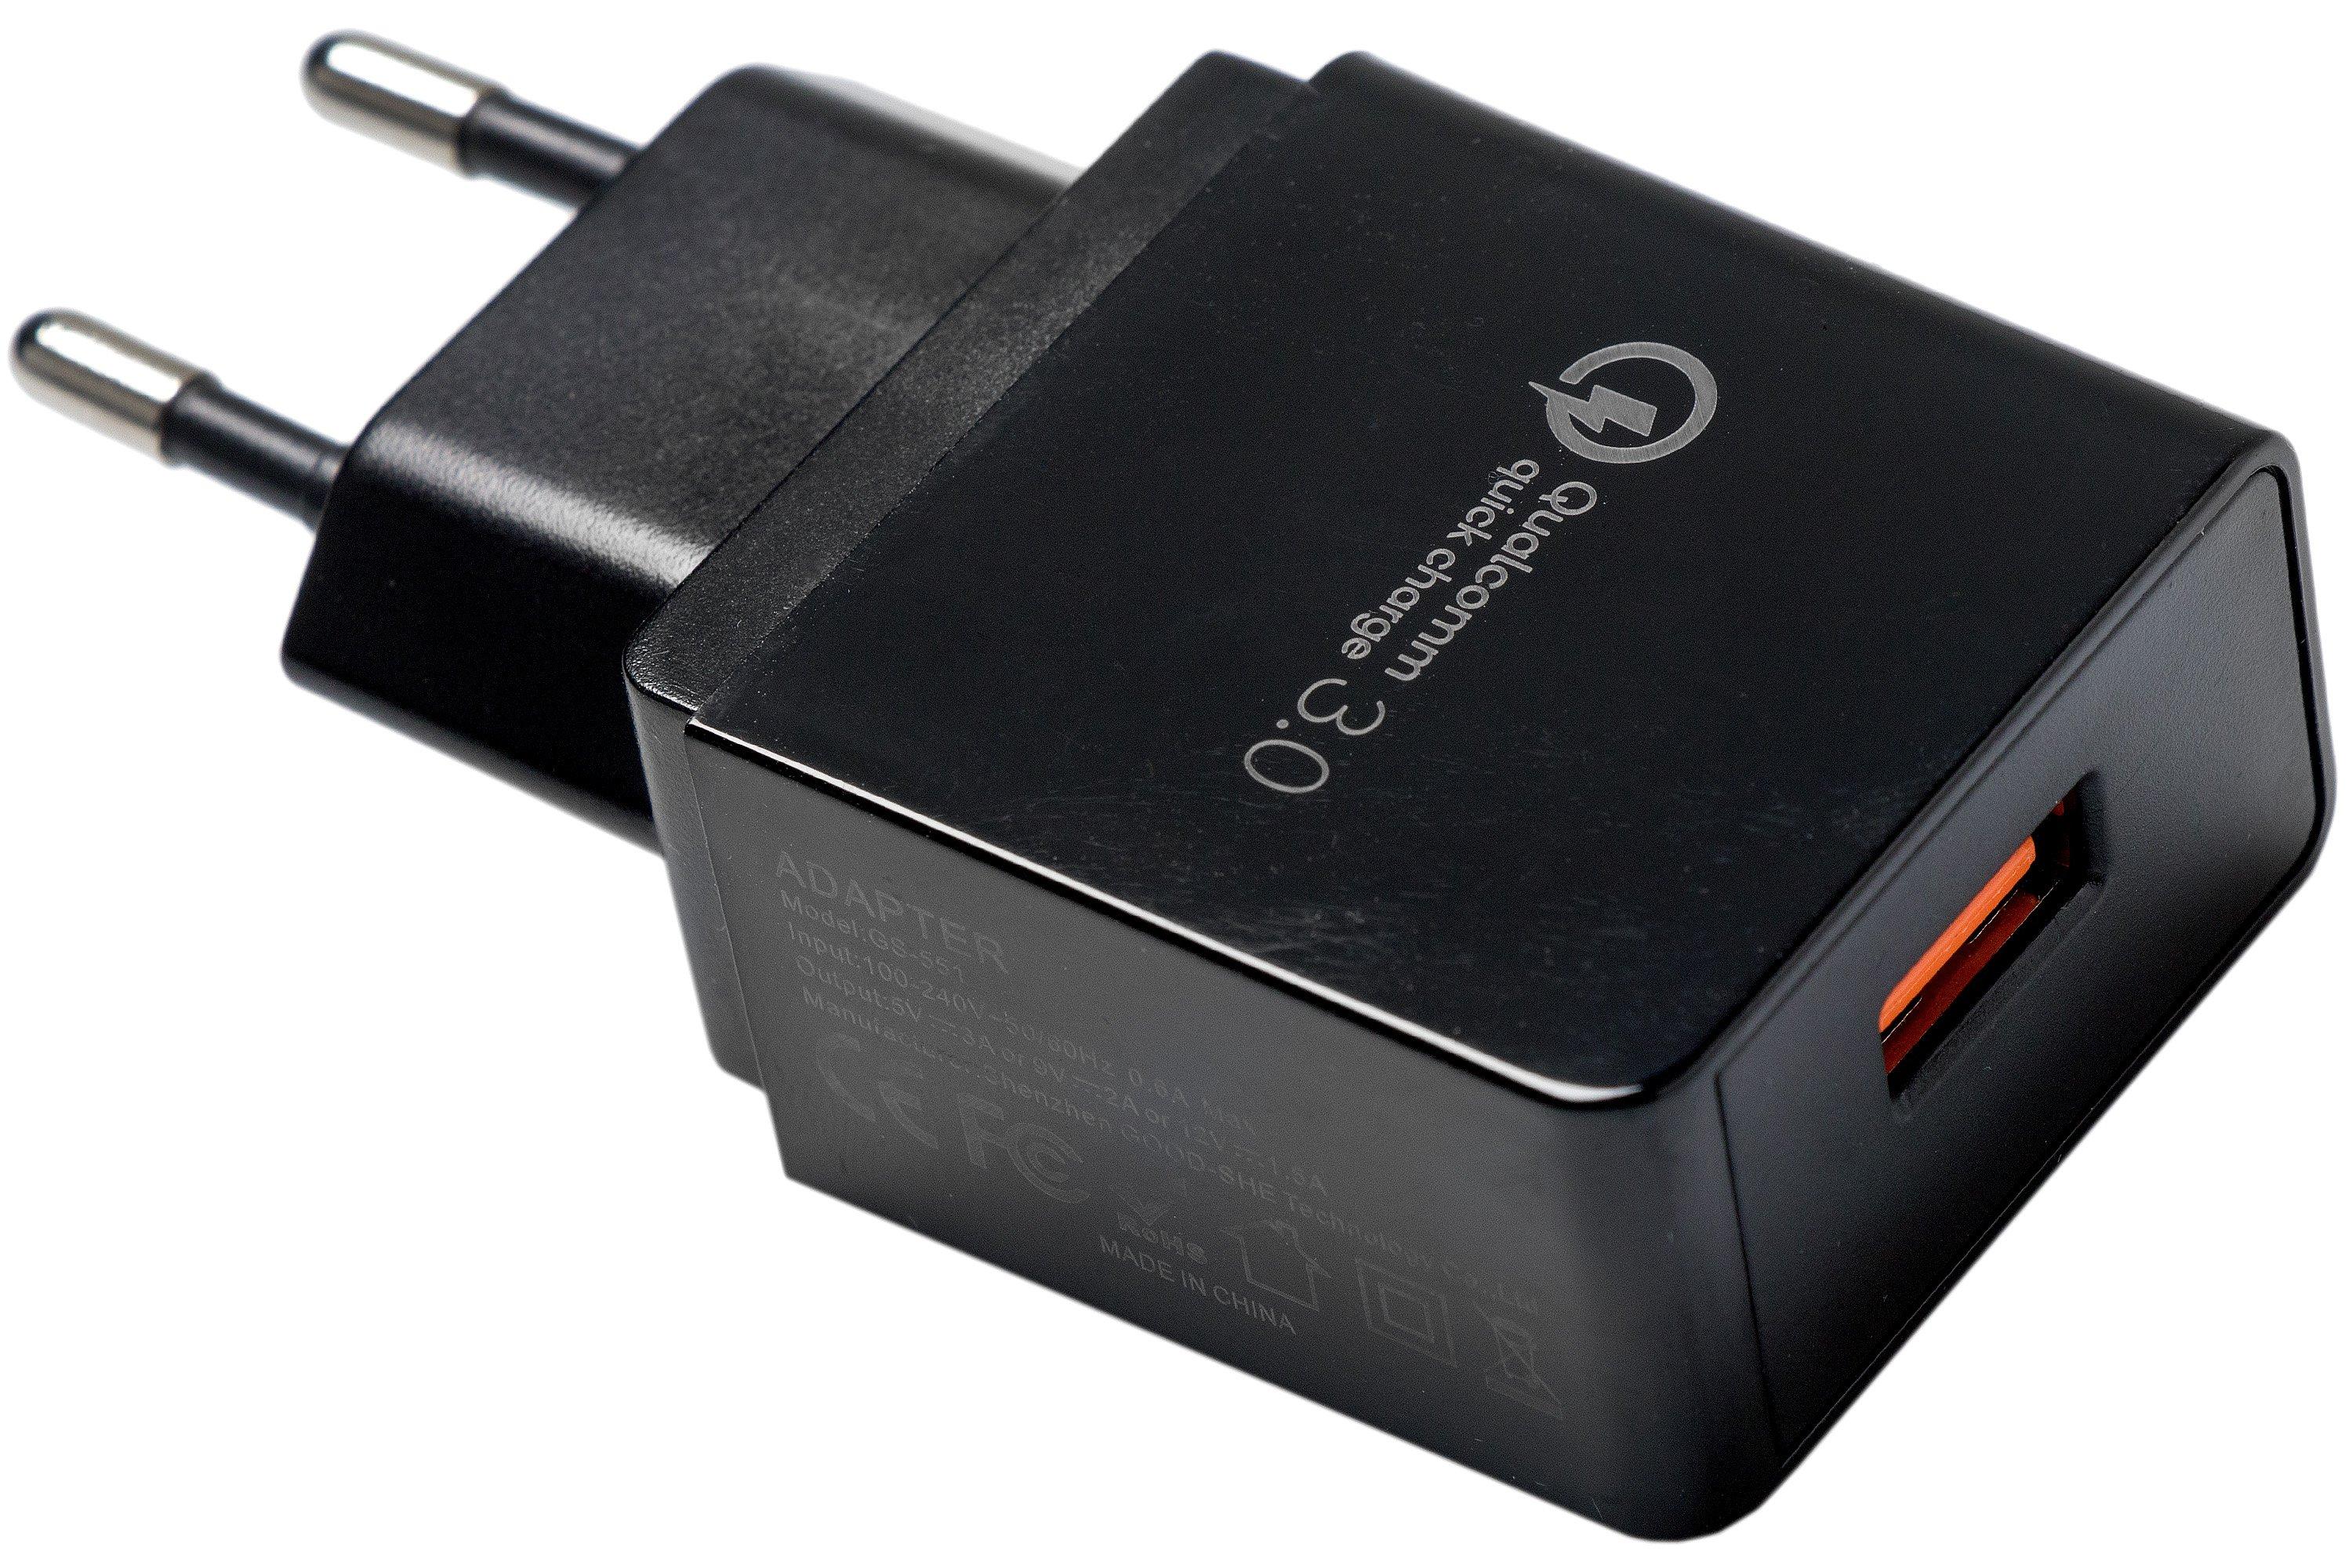 Prematuur Keel verantwoordelijkheid Qualcomm QC 3.0 usb-adapter | Voordelig kopen bij knivesandtools.nl